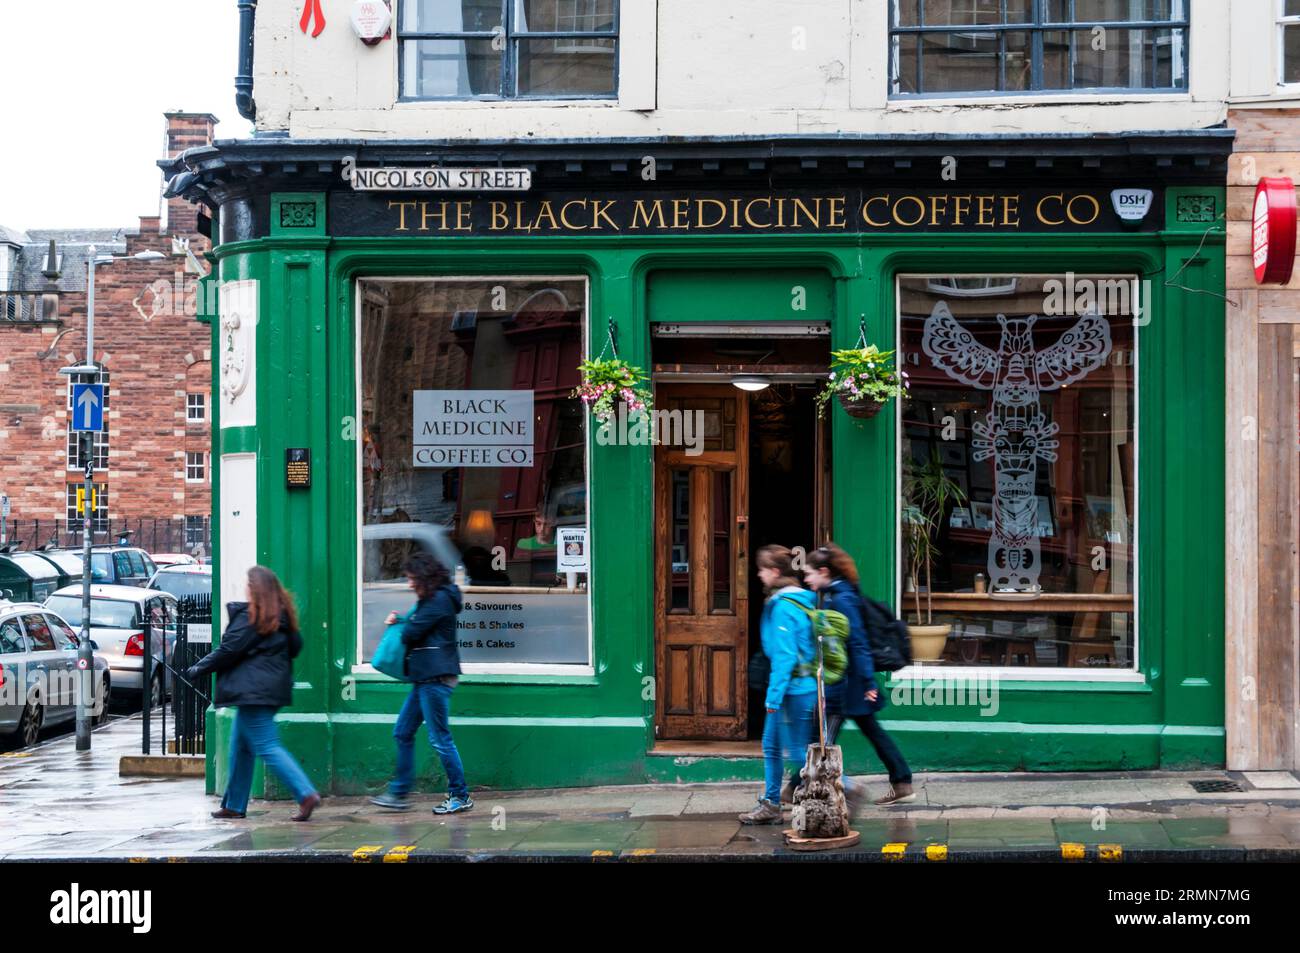 Die Black Medicine Coffee Co in der Nicolson Street, Edinburgh. Wo J K Rowling einige frühe Teile der Harry-Potter-Buchserie schrieb. Stockfoto